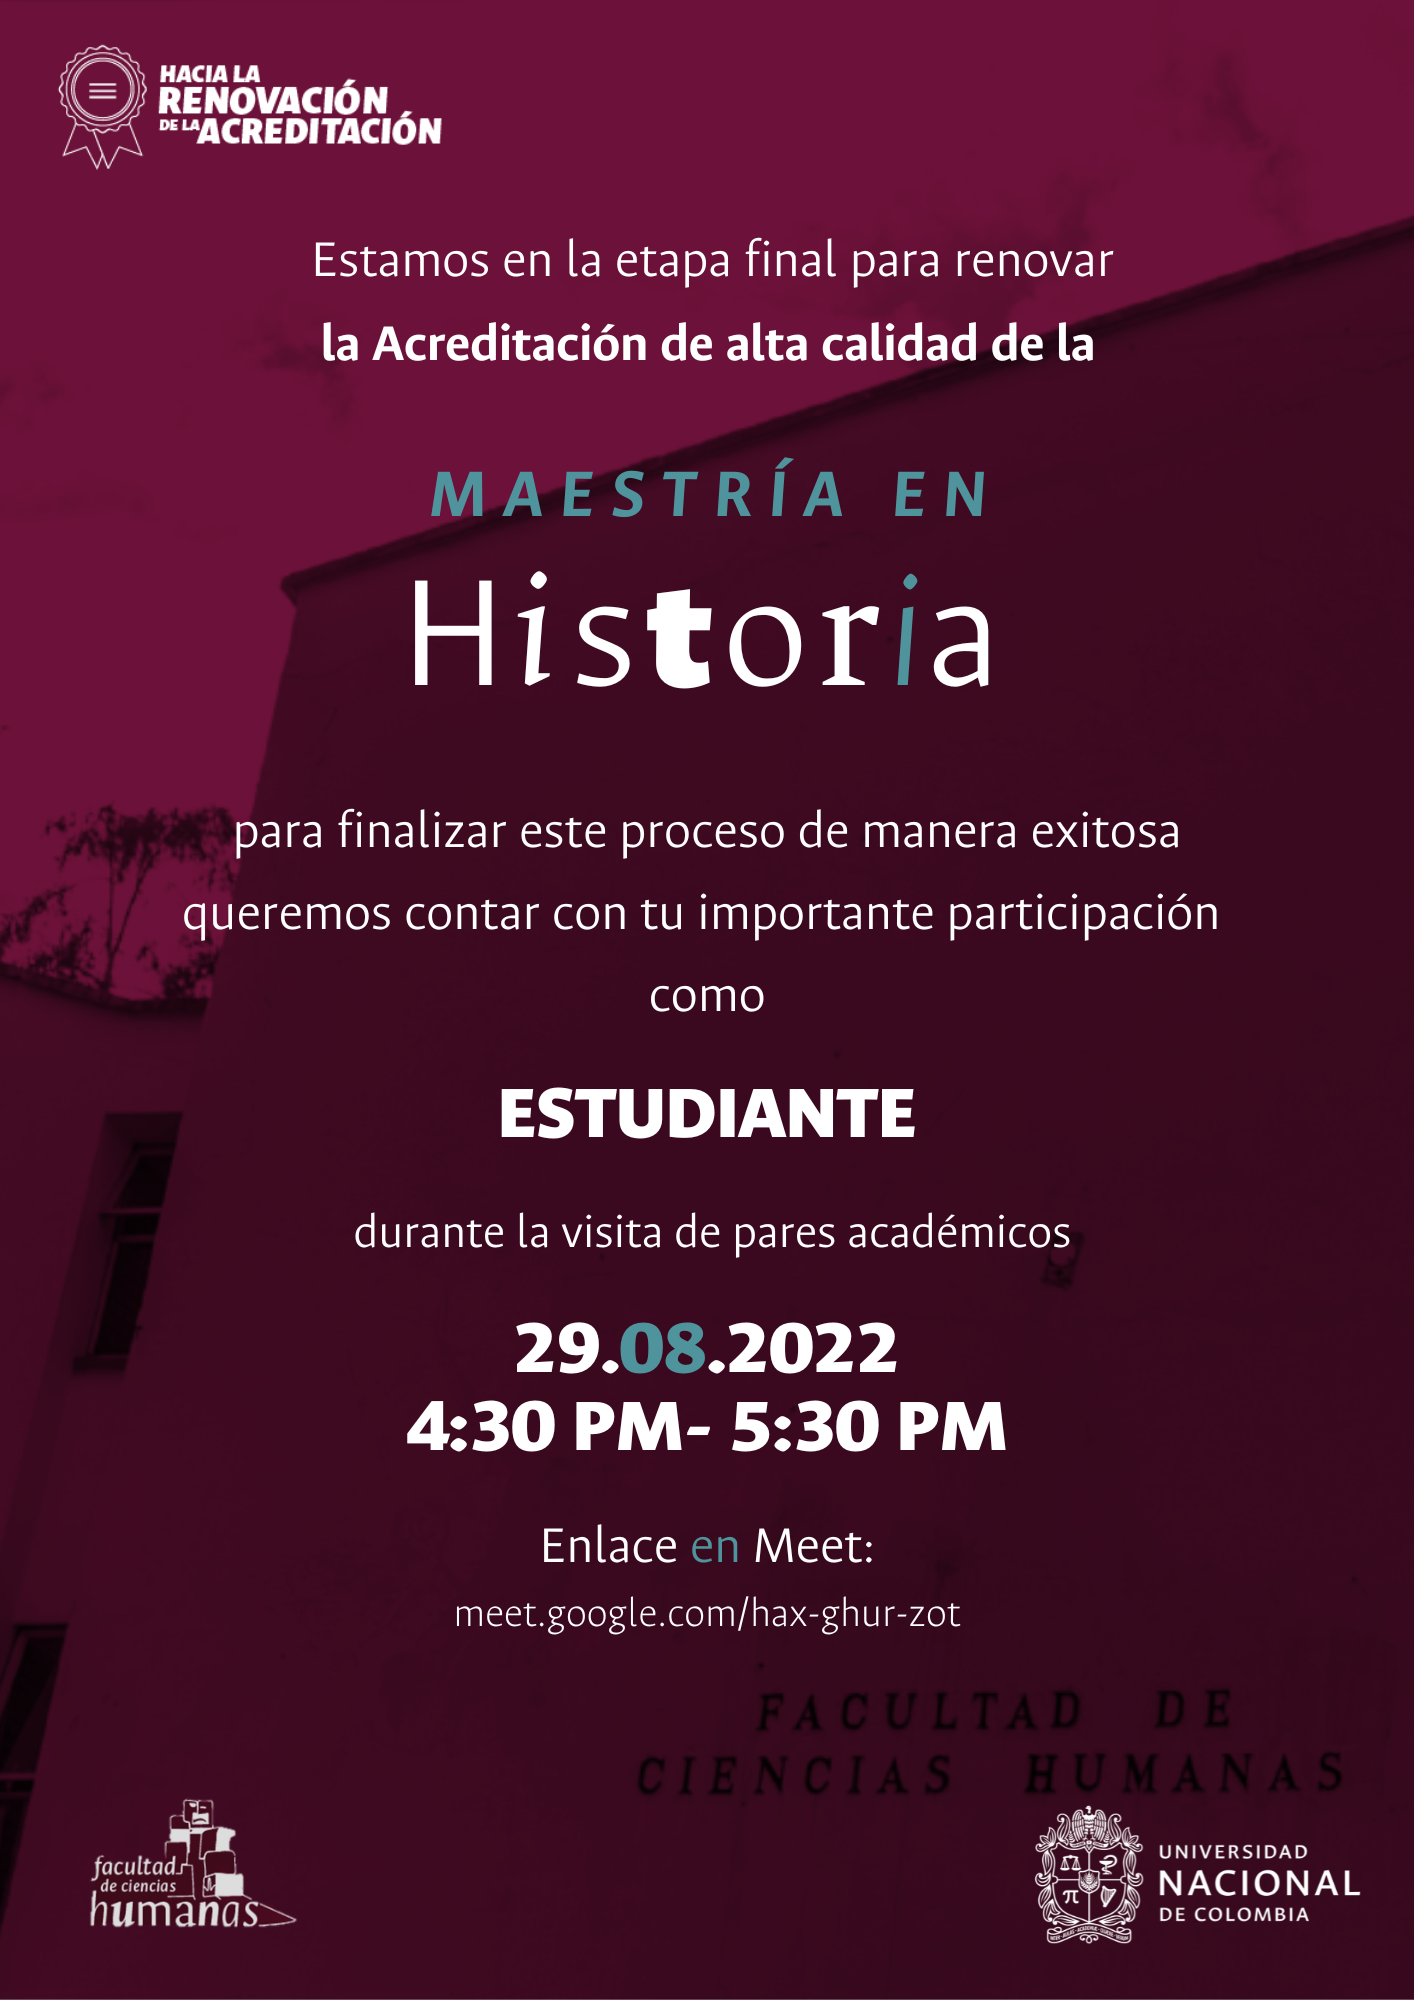 Invitación a estudiantes y egresados de la Maestría en Historia al proceso de visita de pares de la Acreditación